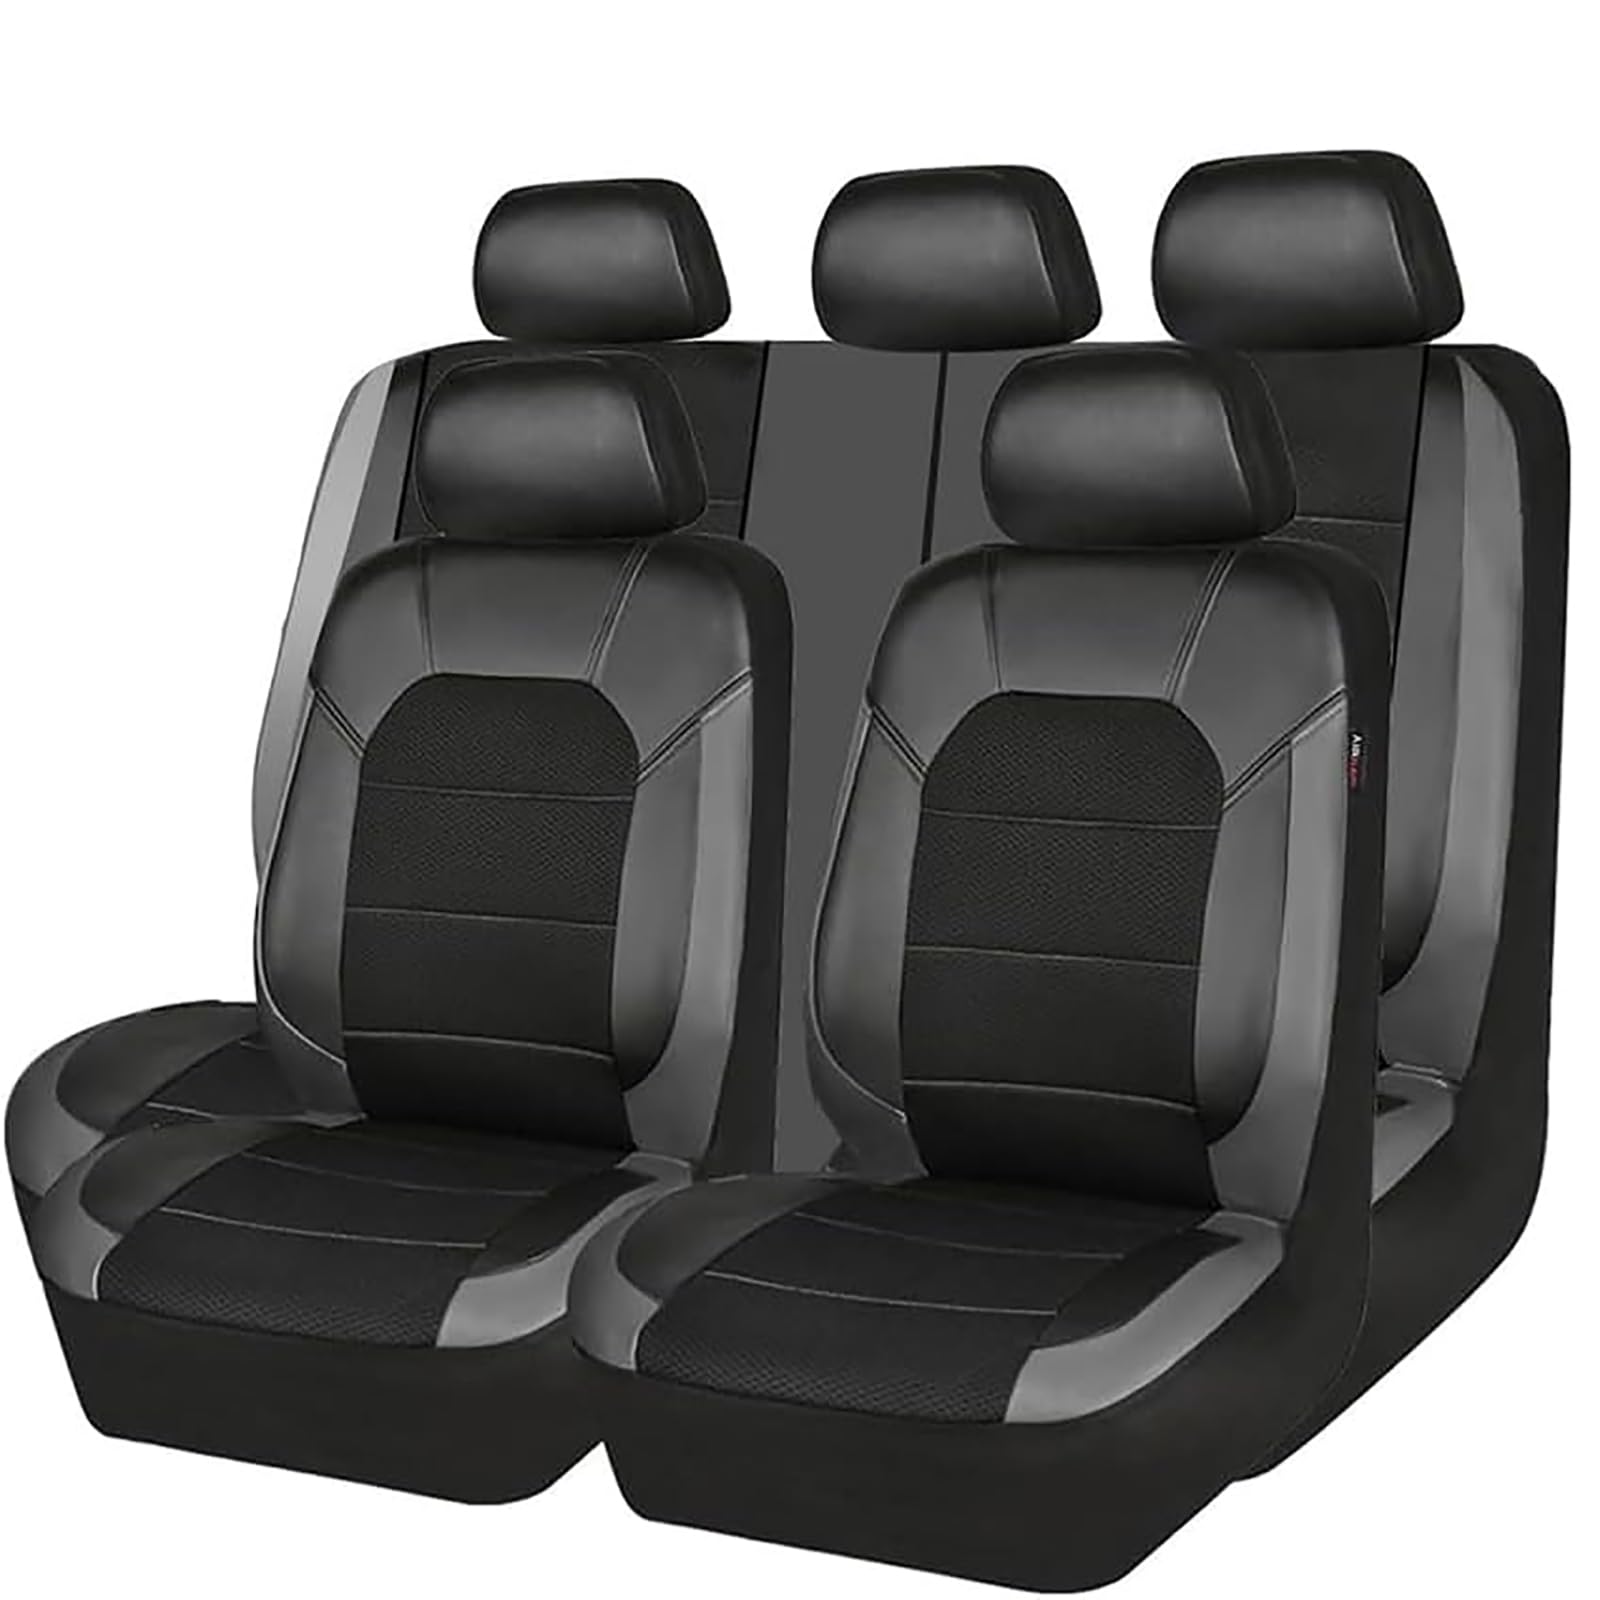 EYHQKRTR Auto Leder Sitzkissen Für VW T-ROC 2018-2023, 5 Sitzer Full Set SitzbezüGe Schonbezug Vorne Rückbank Sitzschutz Compatible Airbag Innenraum Zubehör,B/Grey von EYHQKRTR